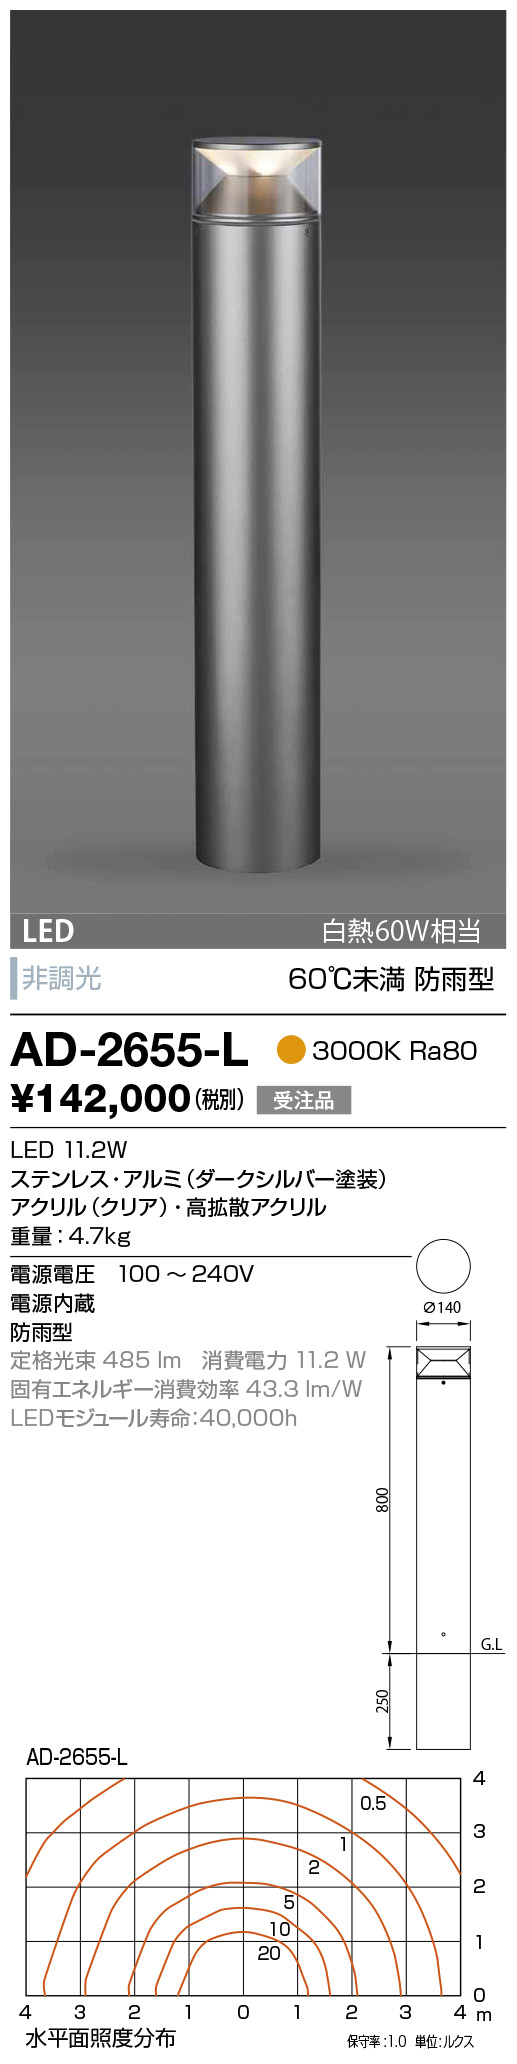 山田照明 照明器具 激安 AD-2606-L ガーデンライト（yamada） - 2